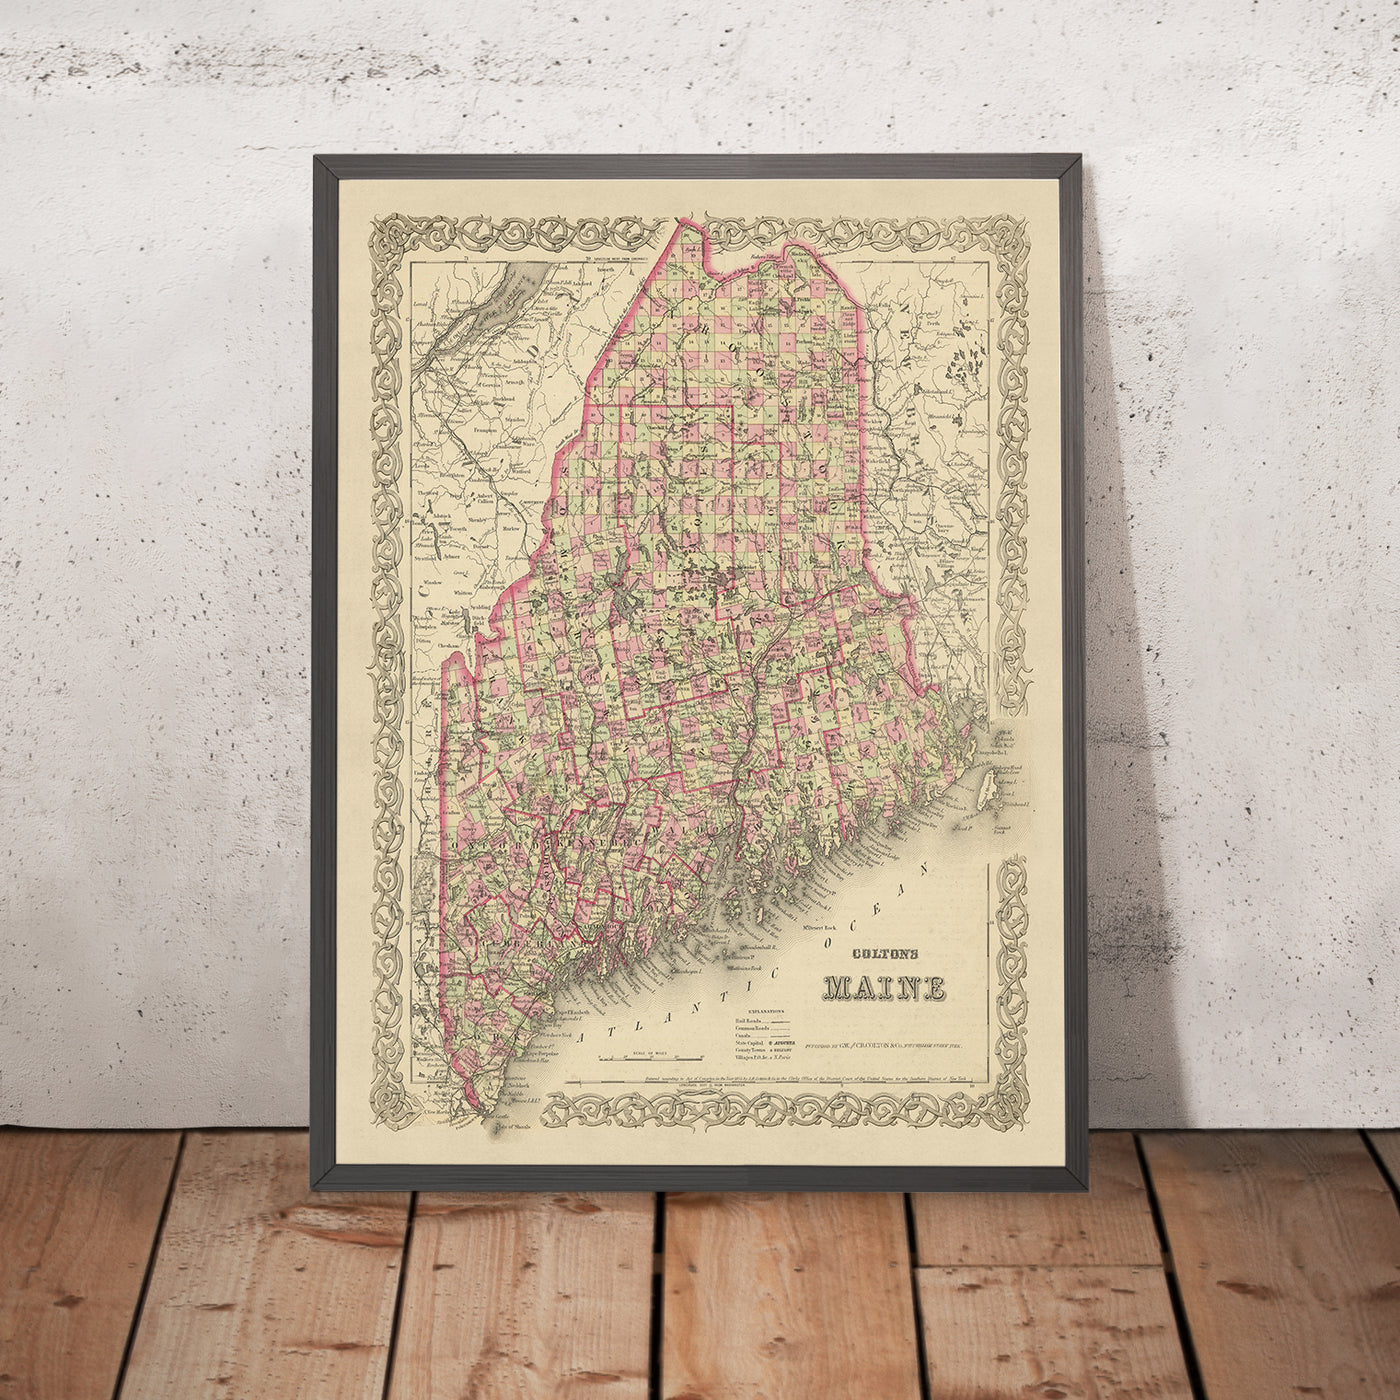 Mapa antiguo de Maine por JH Colton, 1855: Portland, Bangor, Augusta, Lewiston y Bath